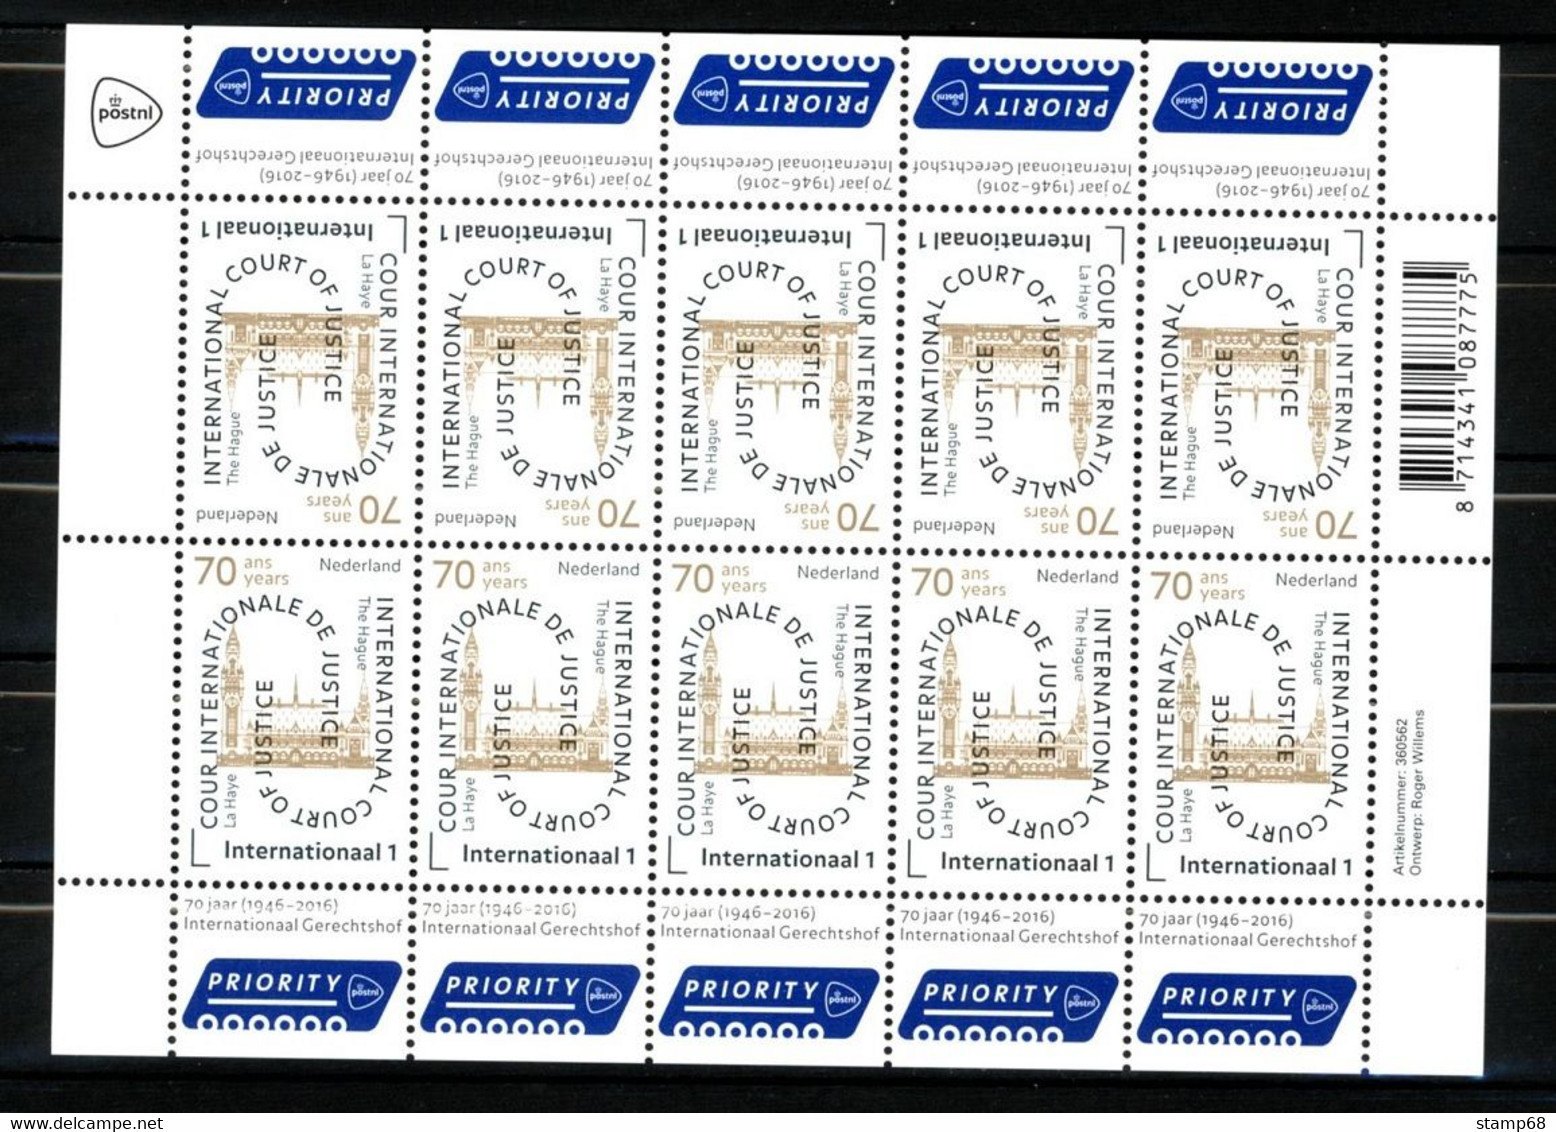 Nederland NVPH D64 VD64 Vel Cour De Justice 2016 MNH Postfris - Dienstmarken